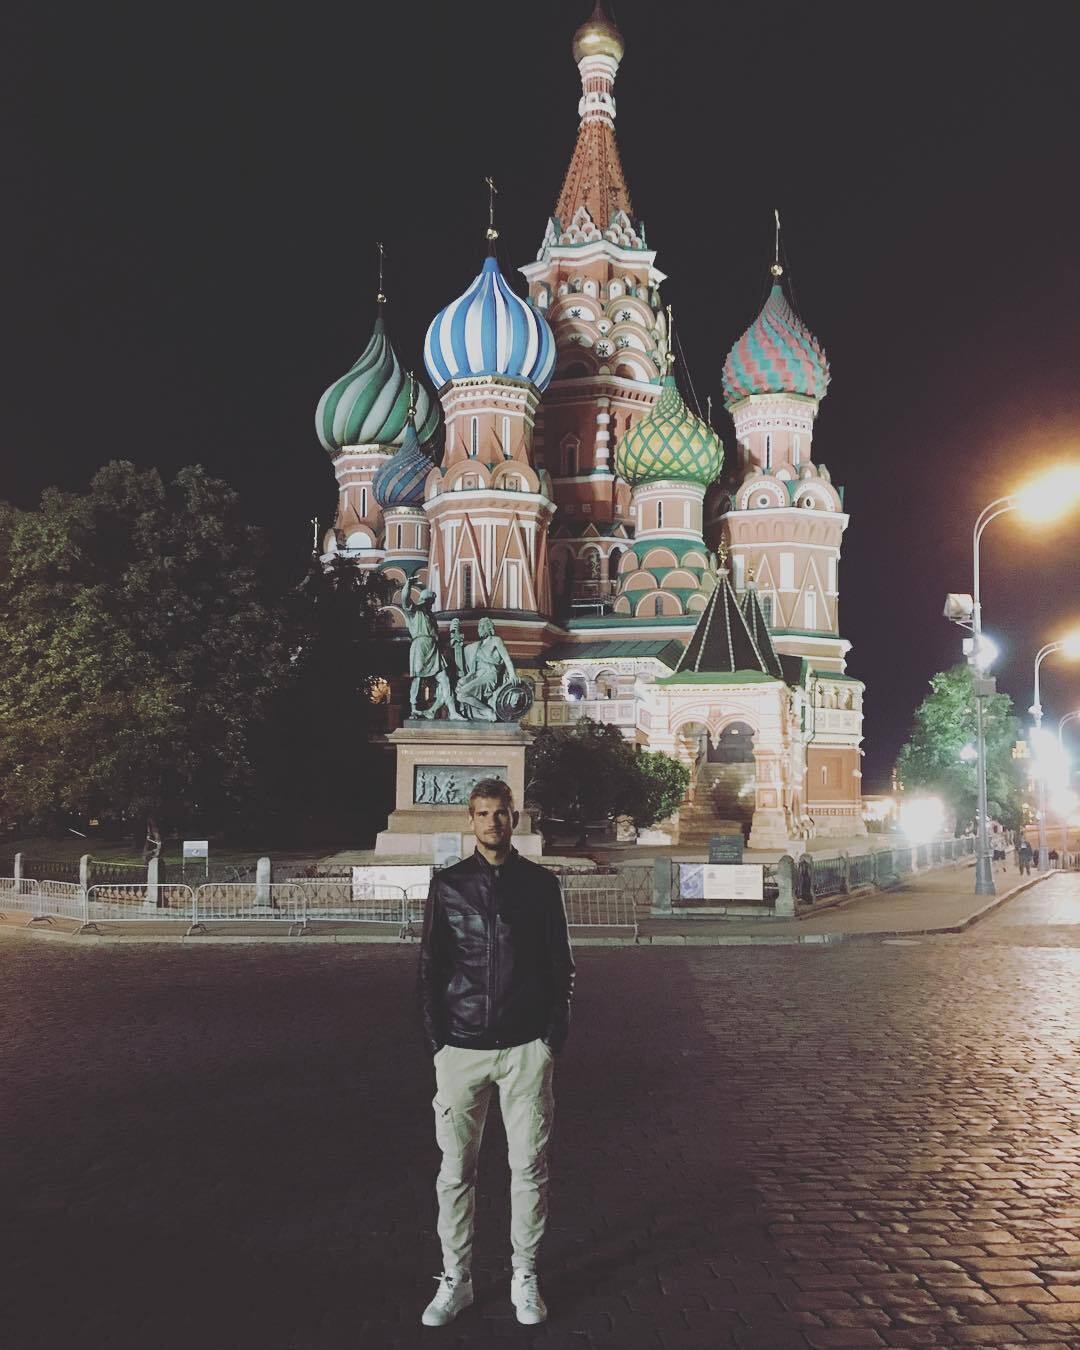 Вратарь "Лацио", любивший Россию из Италии, наотрез отказался выступать в сборной РФ и приезжать в страну